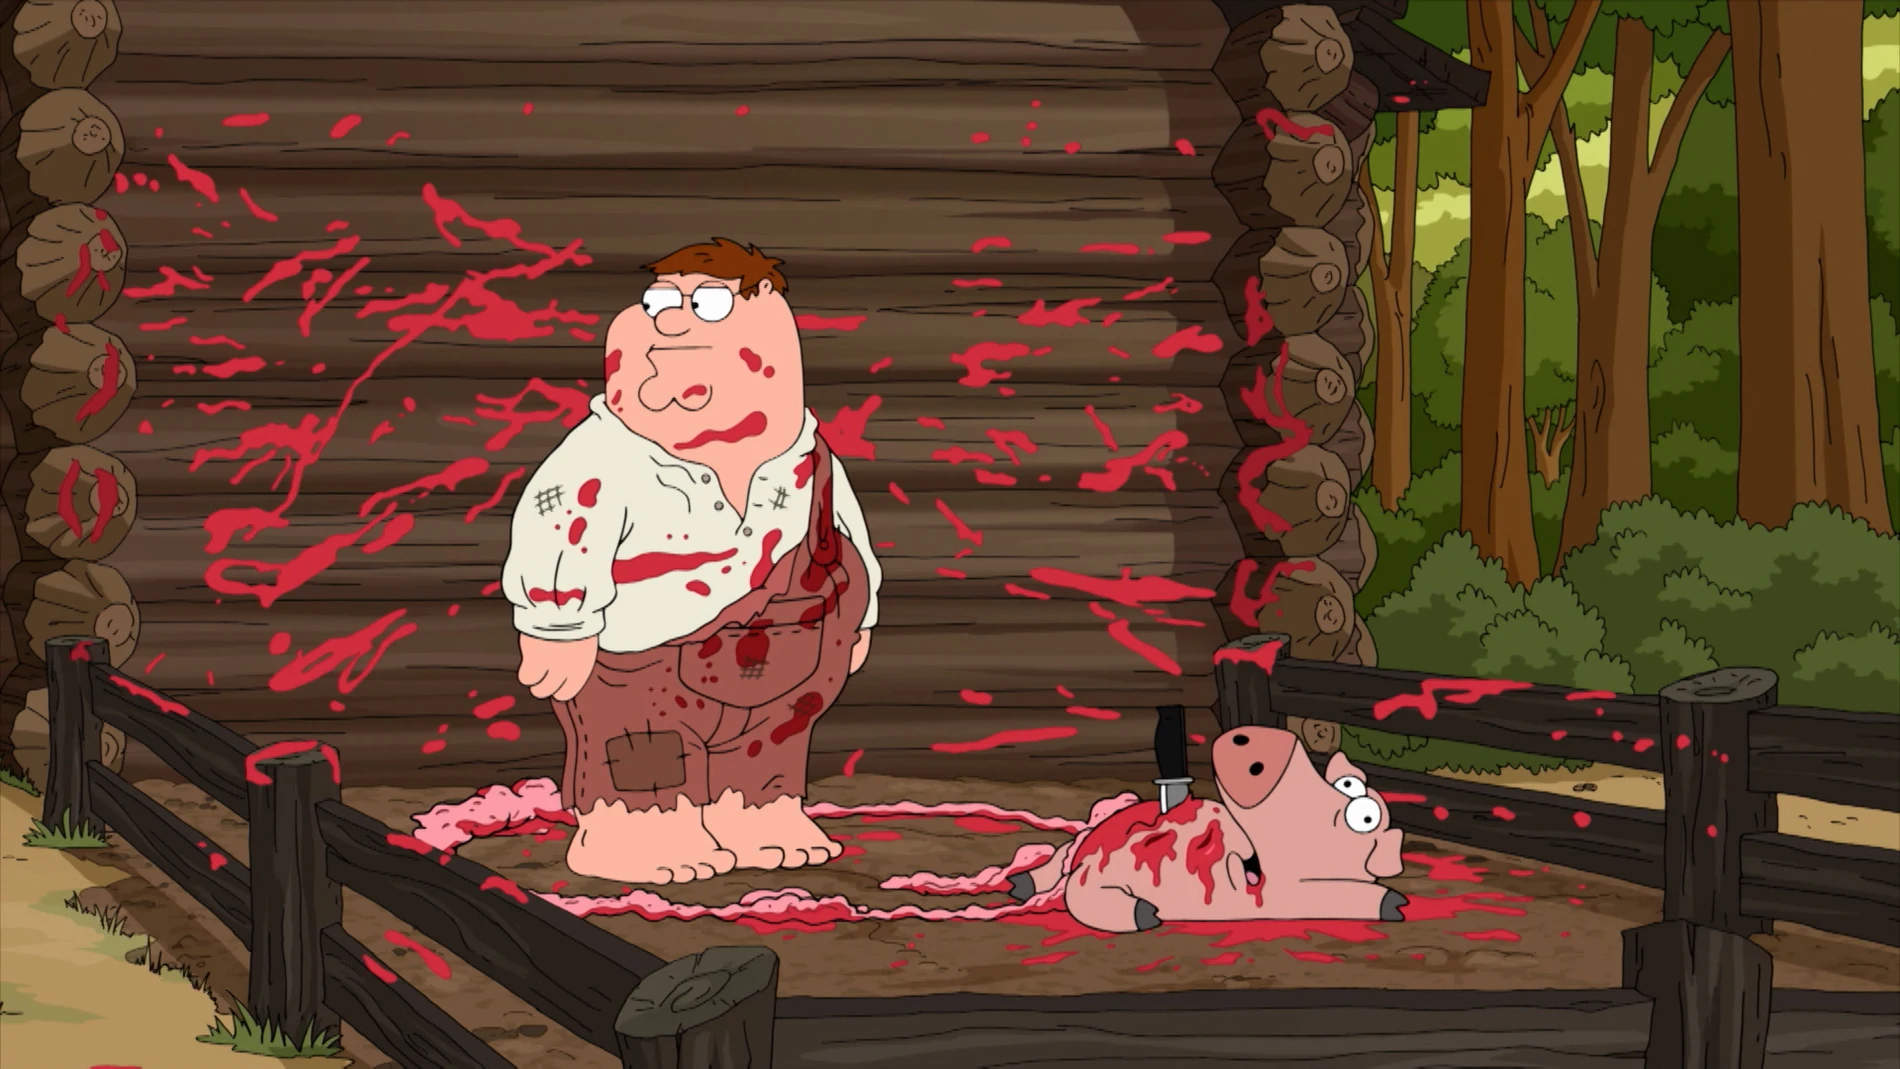  Peter después de matar a un cerdo: "¿Para qué quería yo la sangre?"